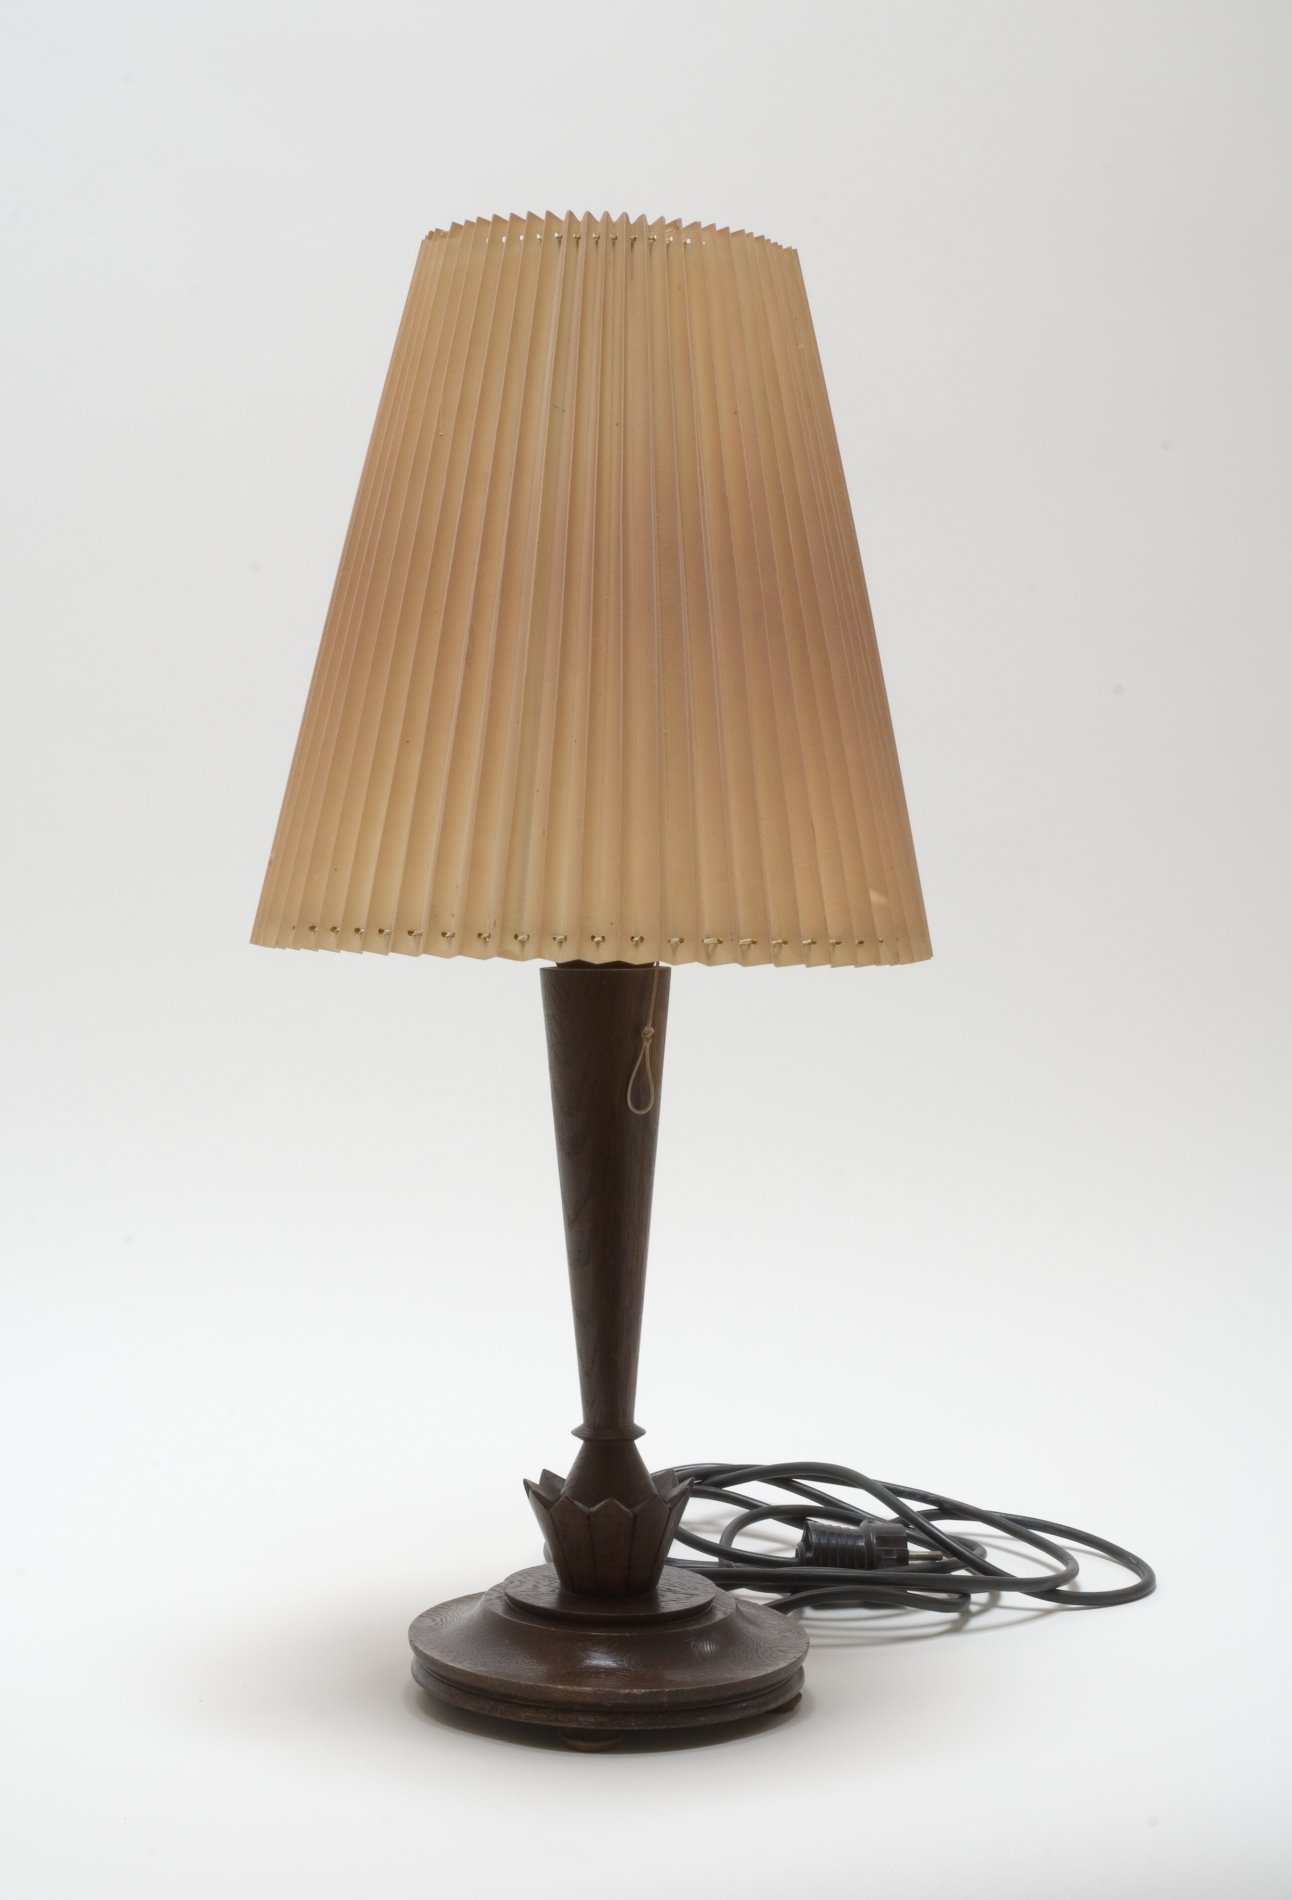 Tischlampe mit hölzernem Fuß und Faltenschirm (Stiftung Domäne Dahlem - Landgut und Museum, Weiternutzung nur mit Genehmigung des Museums CC BY-NC-SA)